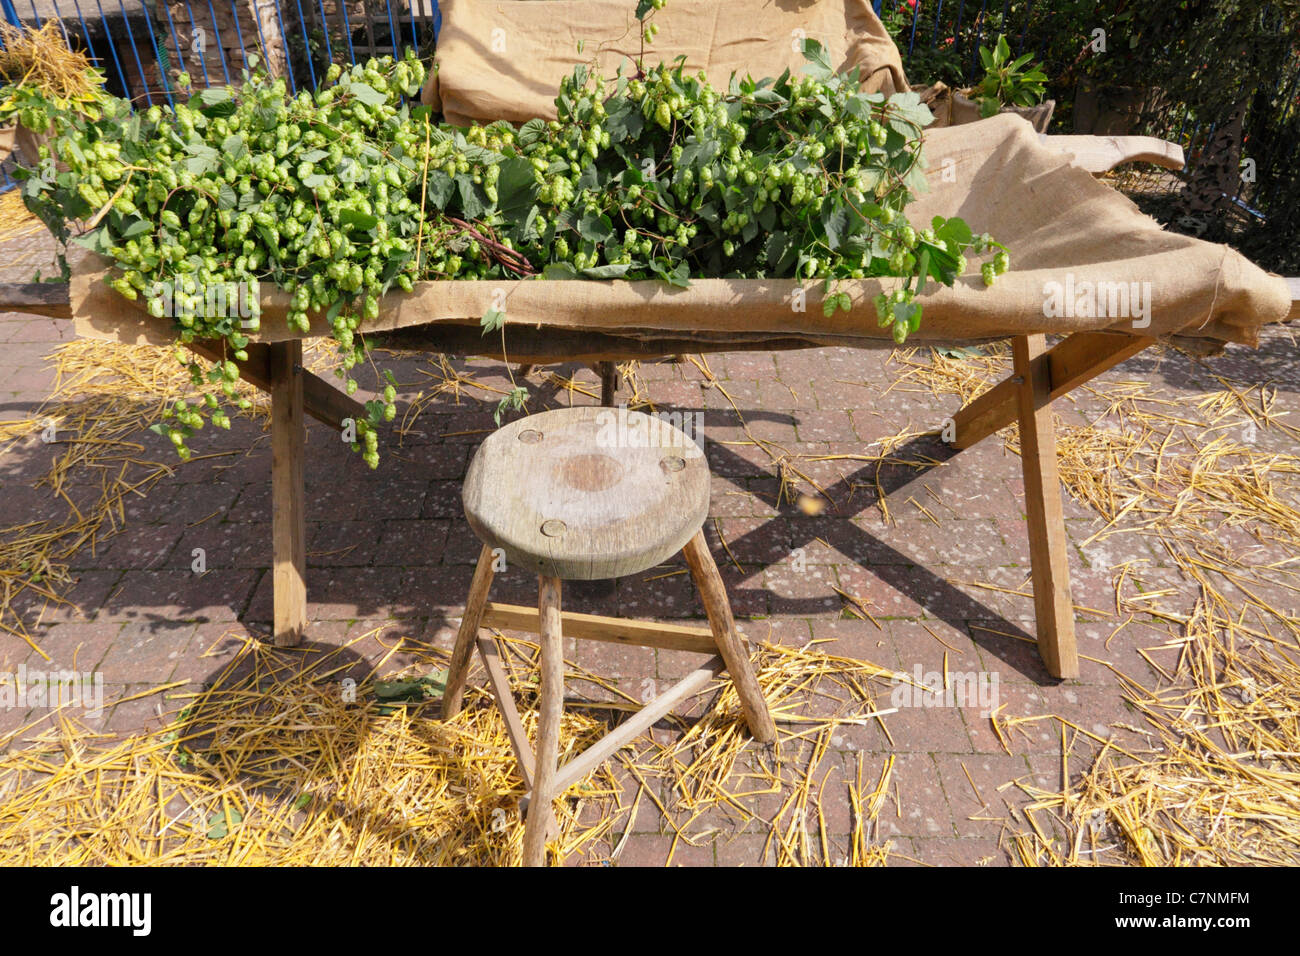 Le houblon, humulus lupulus, dans la cueillette du houblon utilisé pour lit choisi dans le houblon houblon traditionnels chantiers de préparation de la machine avant la cueillette. Banque D'Images